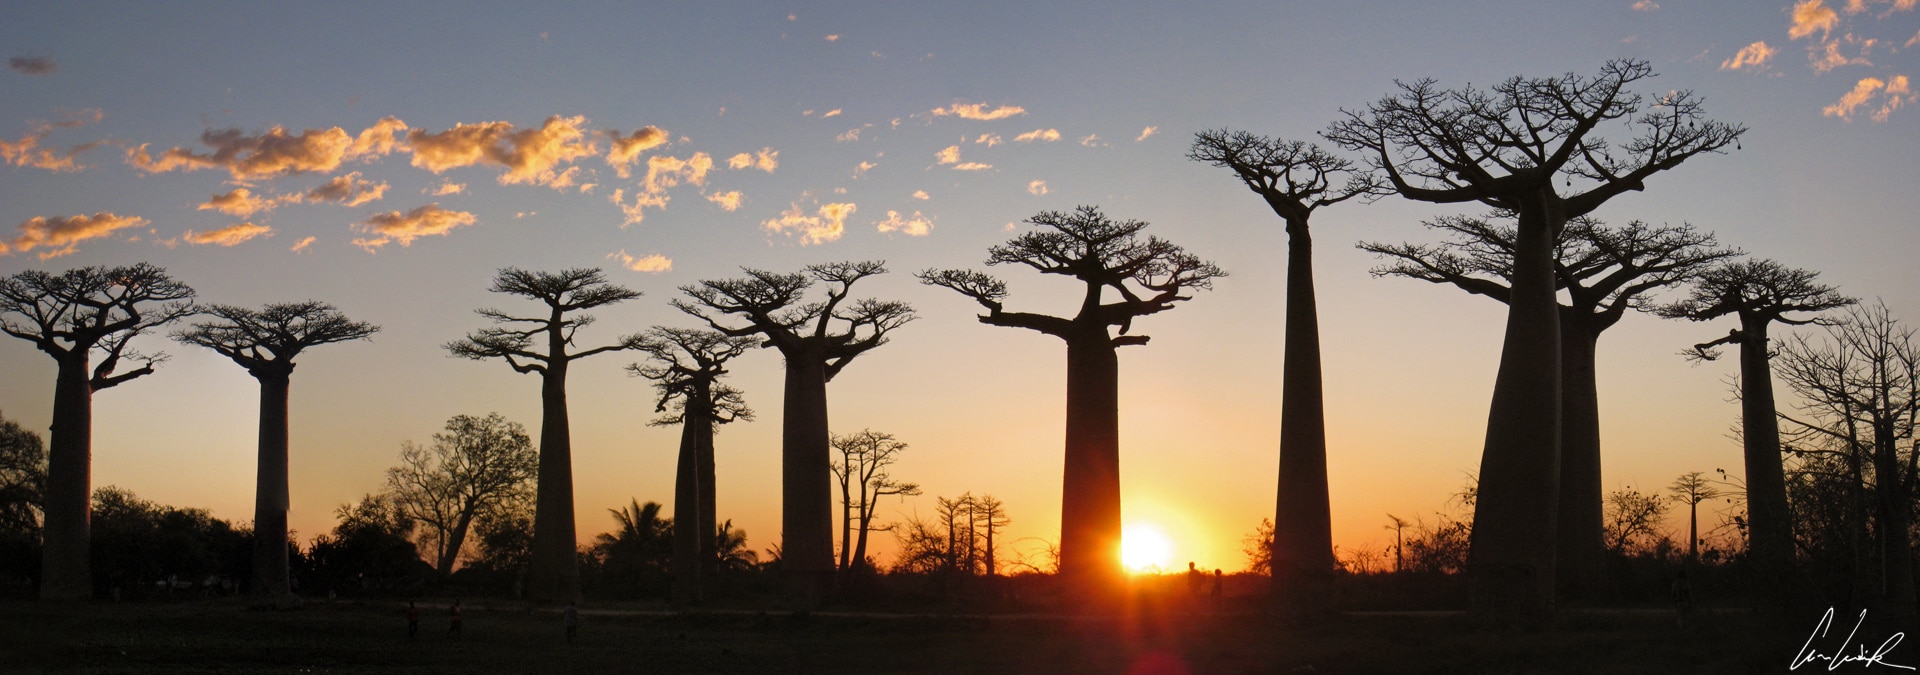 Jurassic World: forêt de pierres et de baobabs géants !